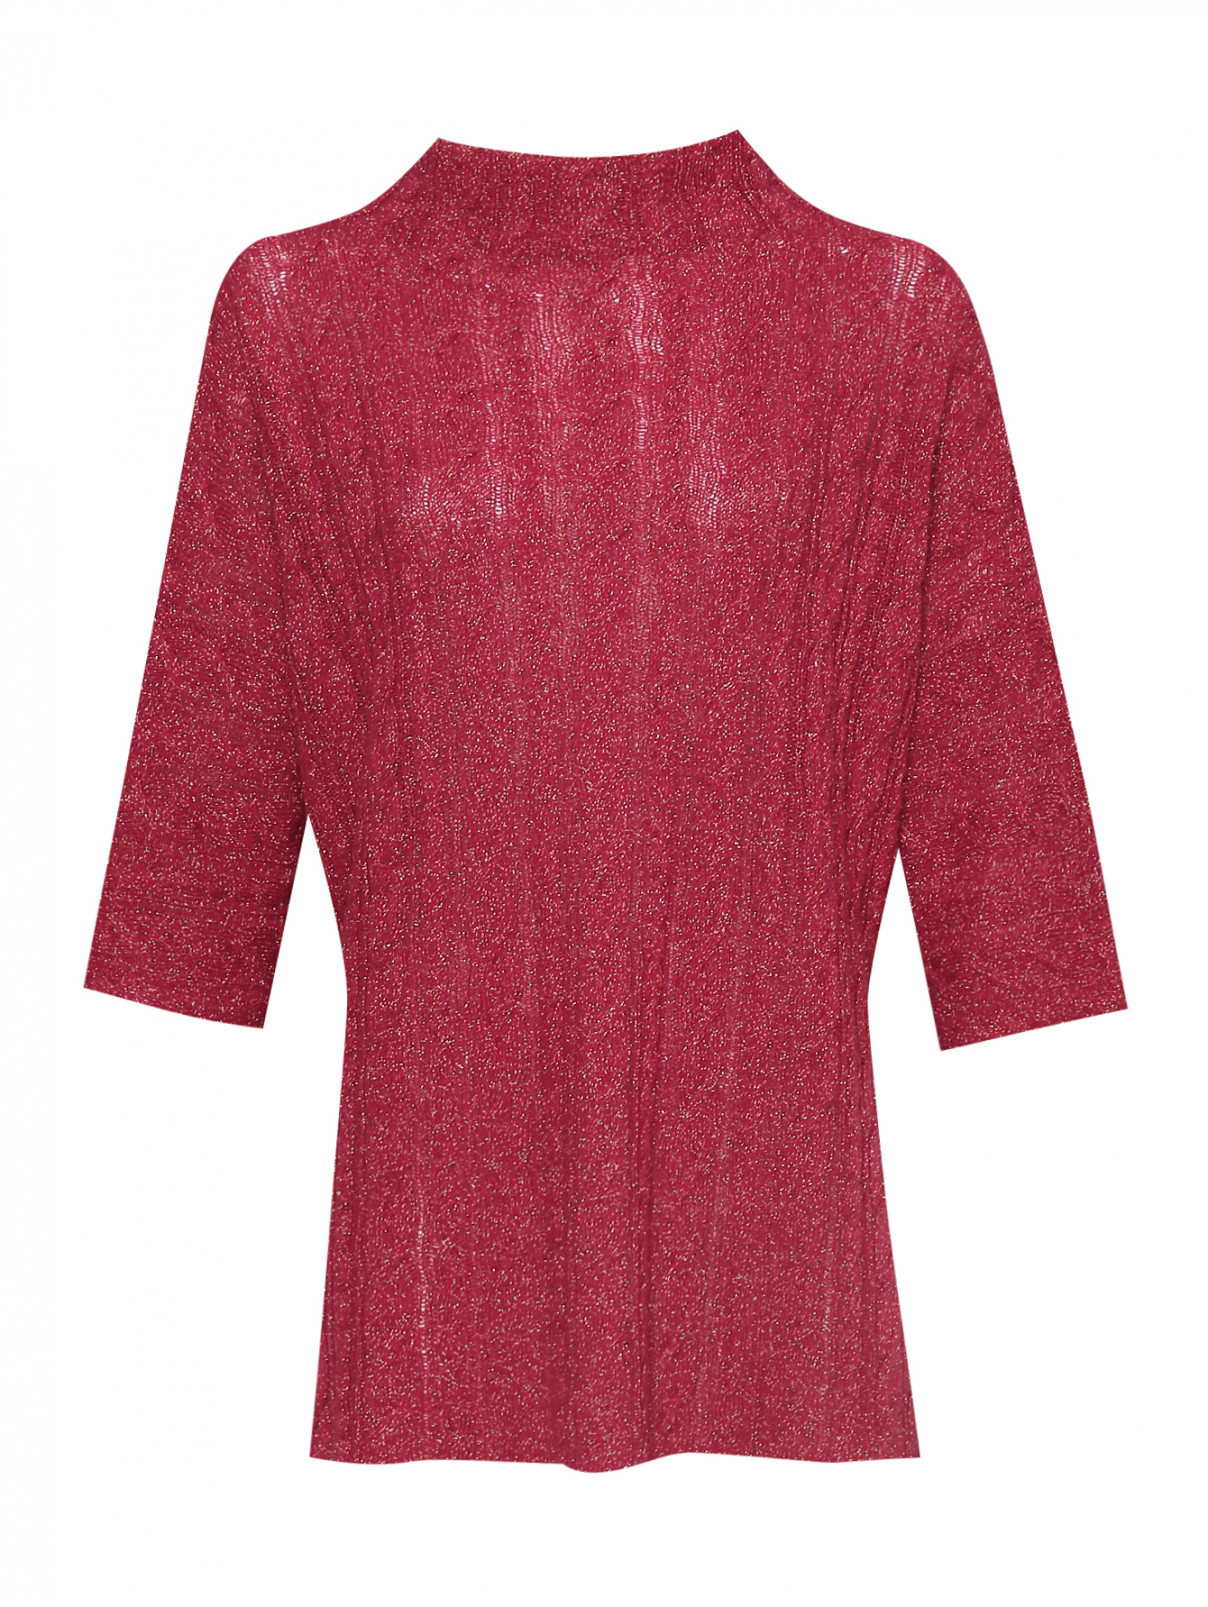 Джемпер из шерсти, вискозы и кашемира с металлизированной нитью Etro  –  Общий вид  – Цвет:  Красный